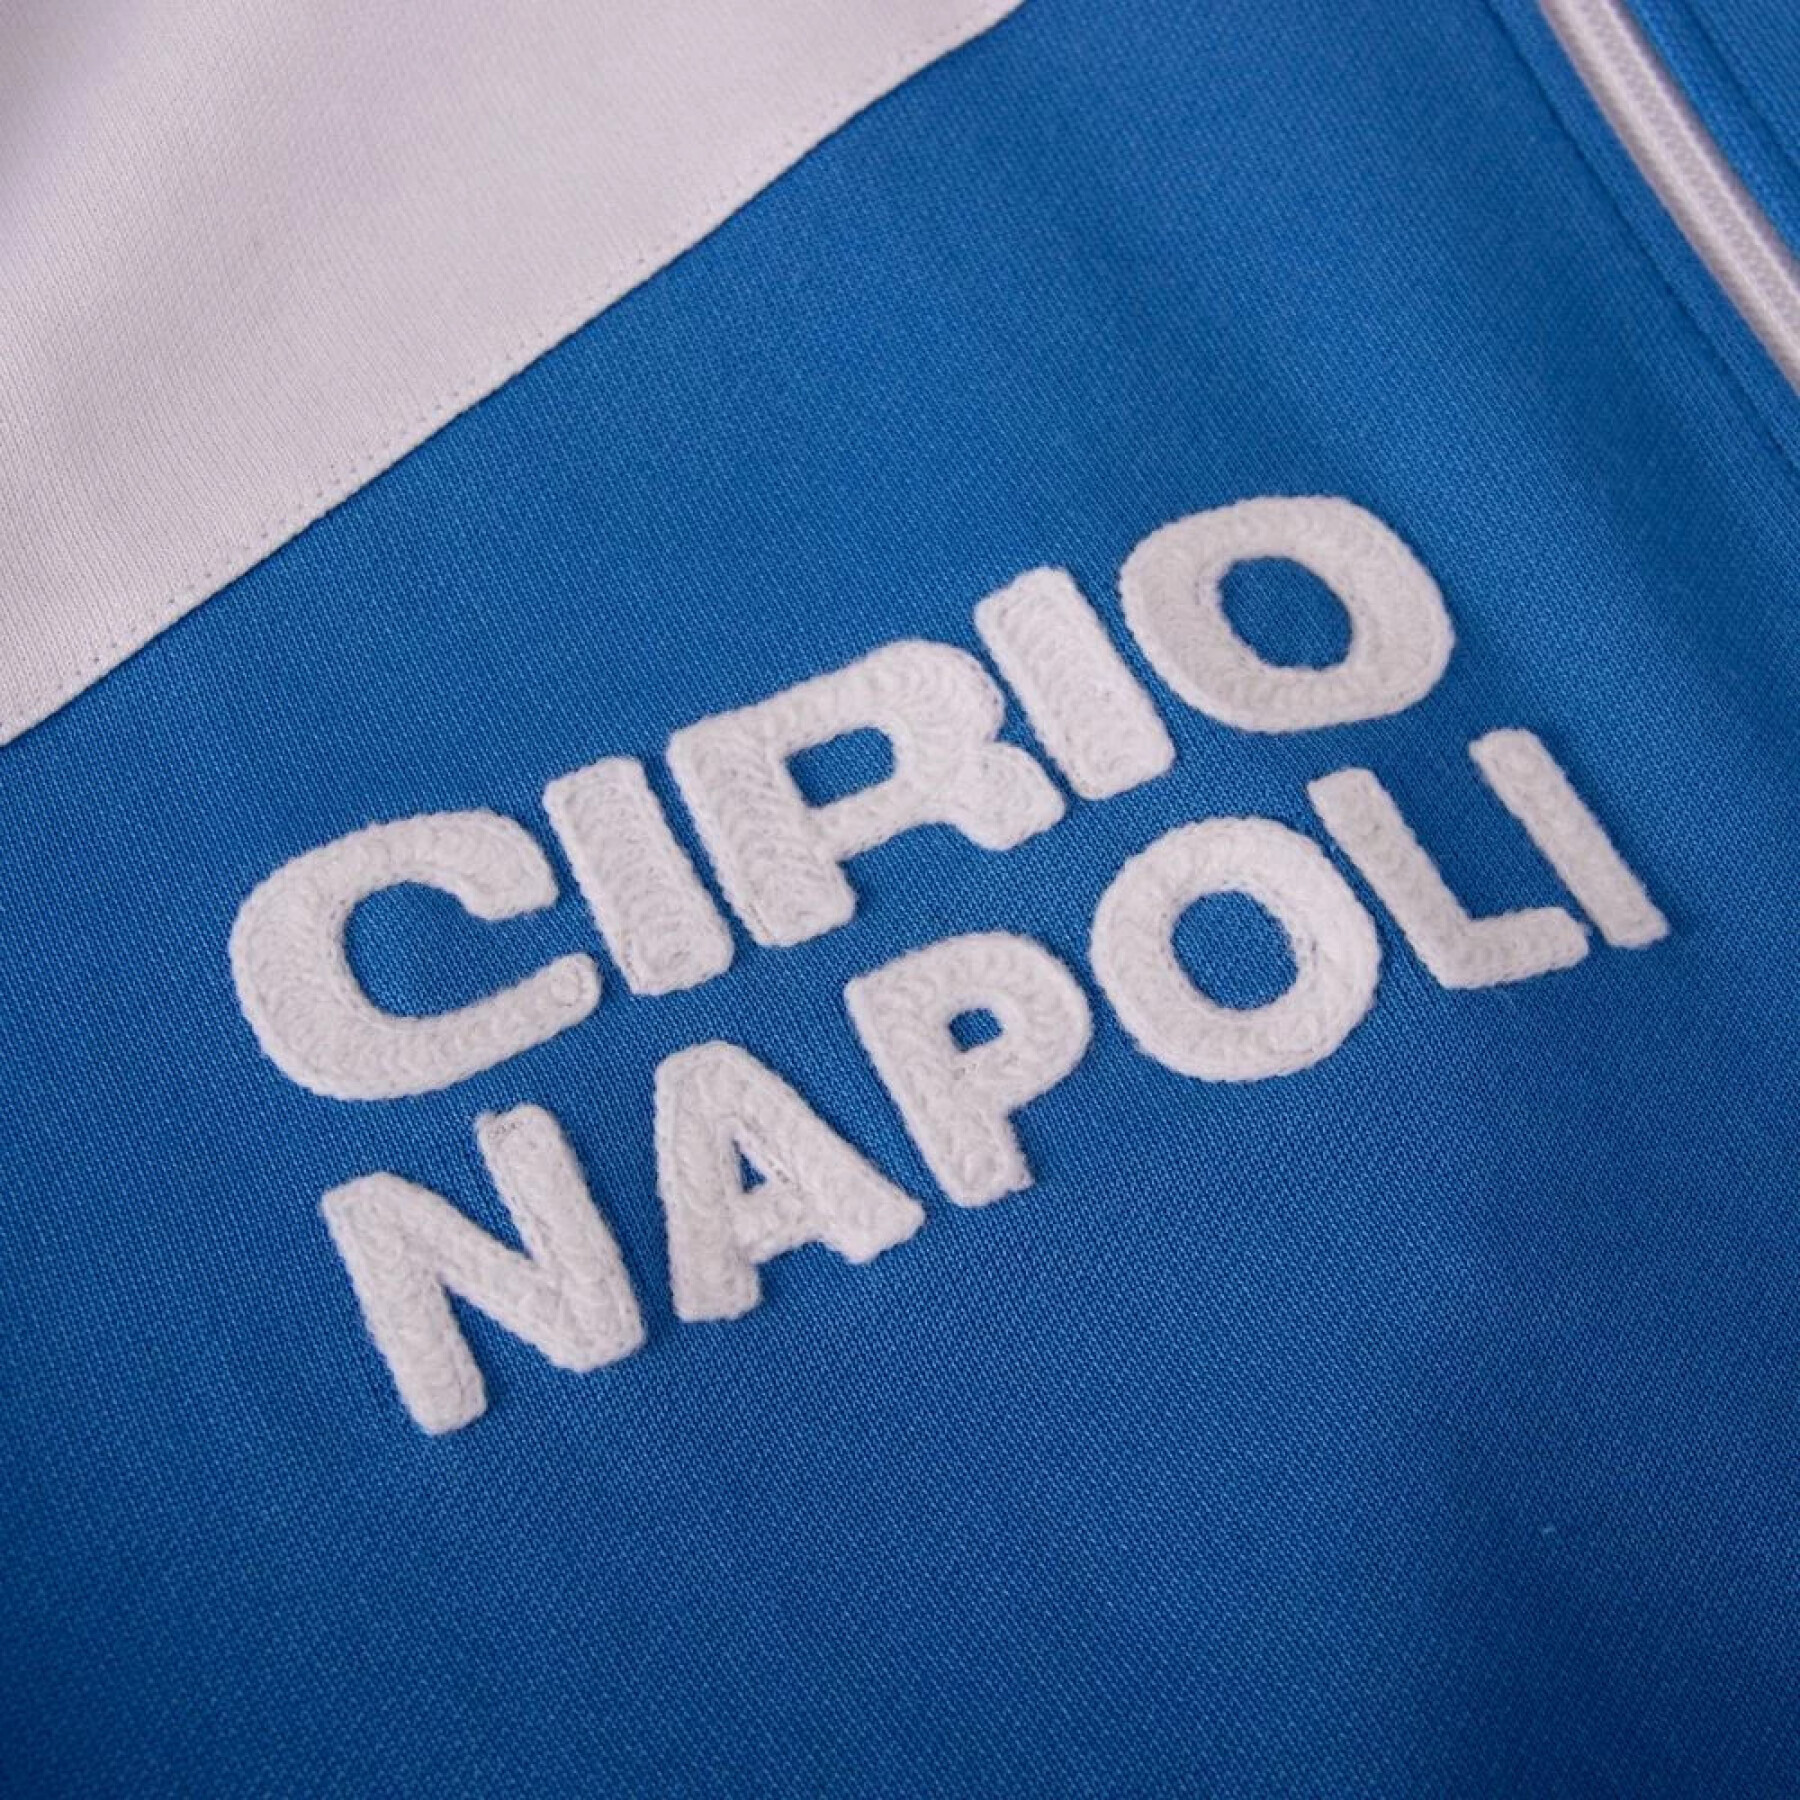 Felpa Maradona SSC Napoli 1984 Retro